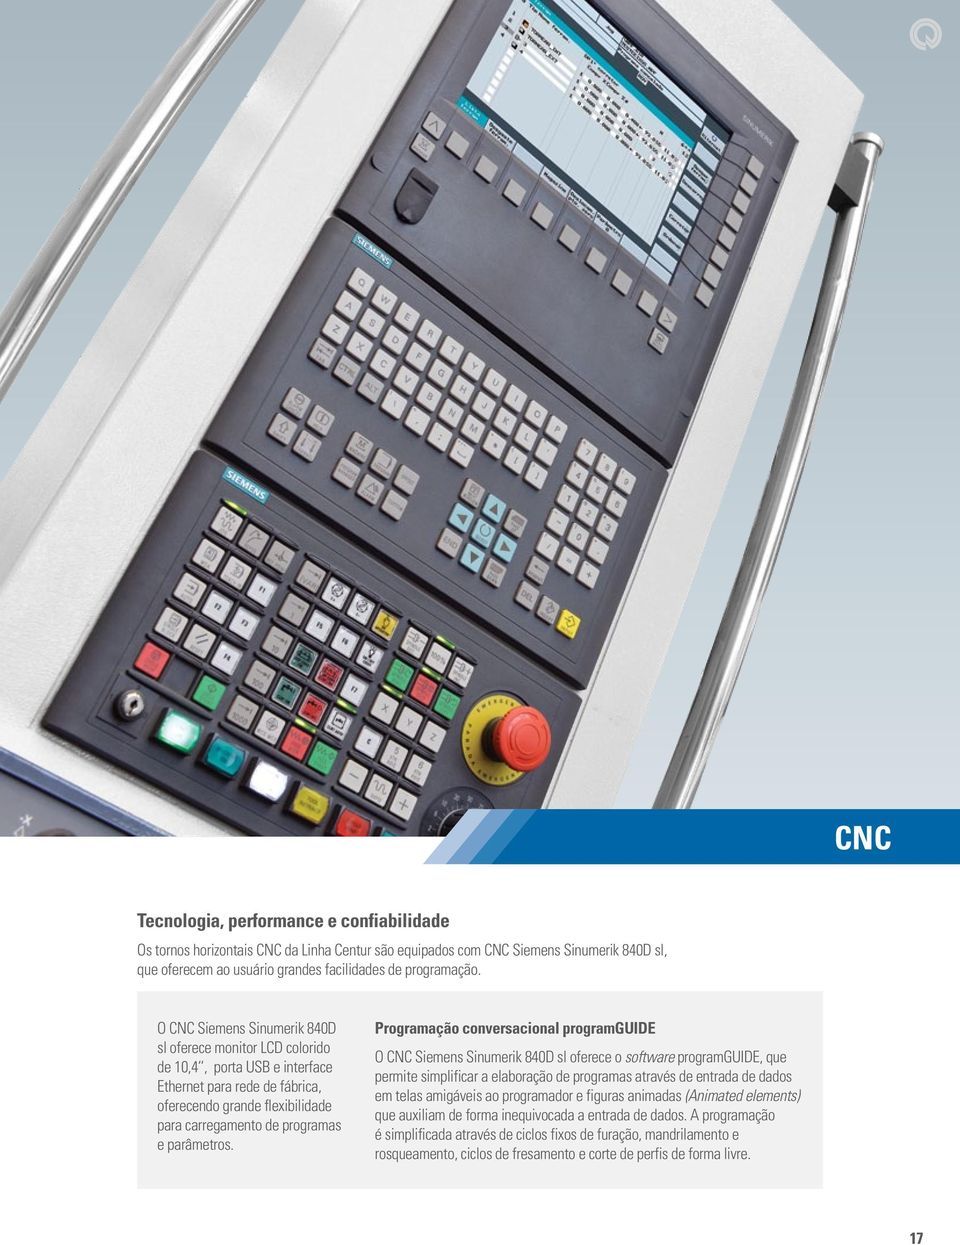 Programação conversacional programguide O CNC Siemens Sinumerik 840D sl oferece o software programguide, que permite simplificar a elaboração de programas através de entrada de dados em telas